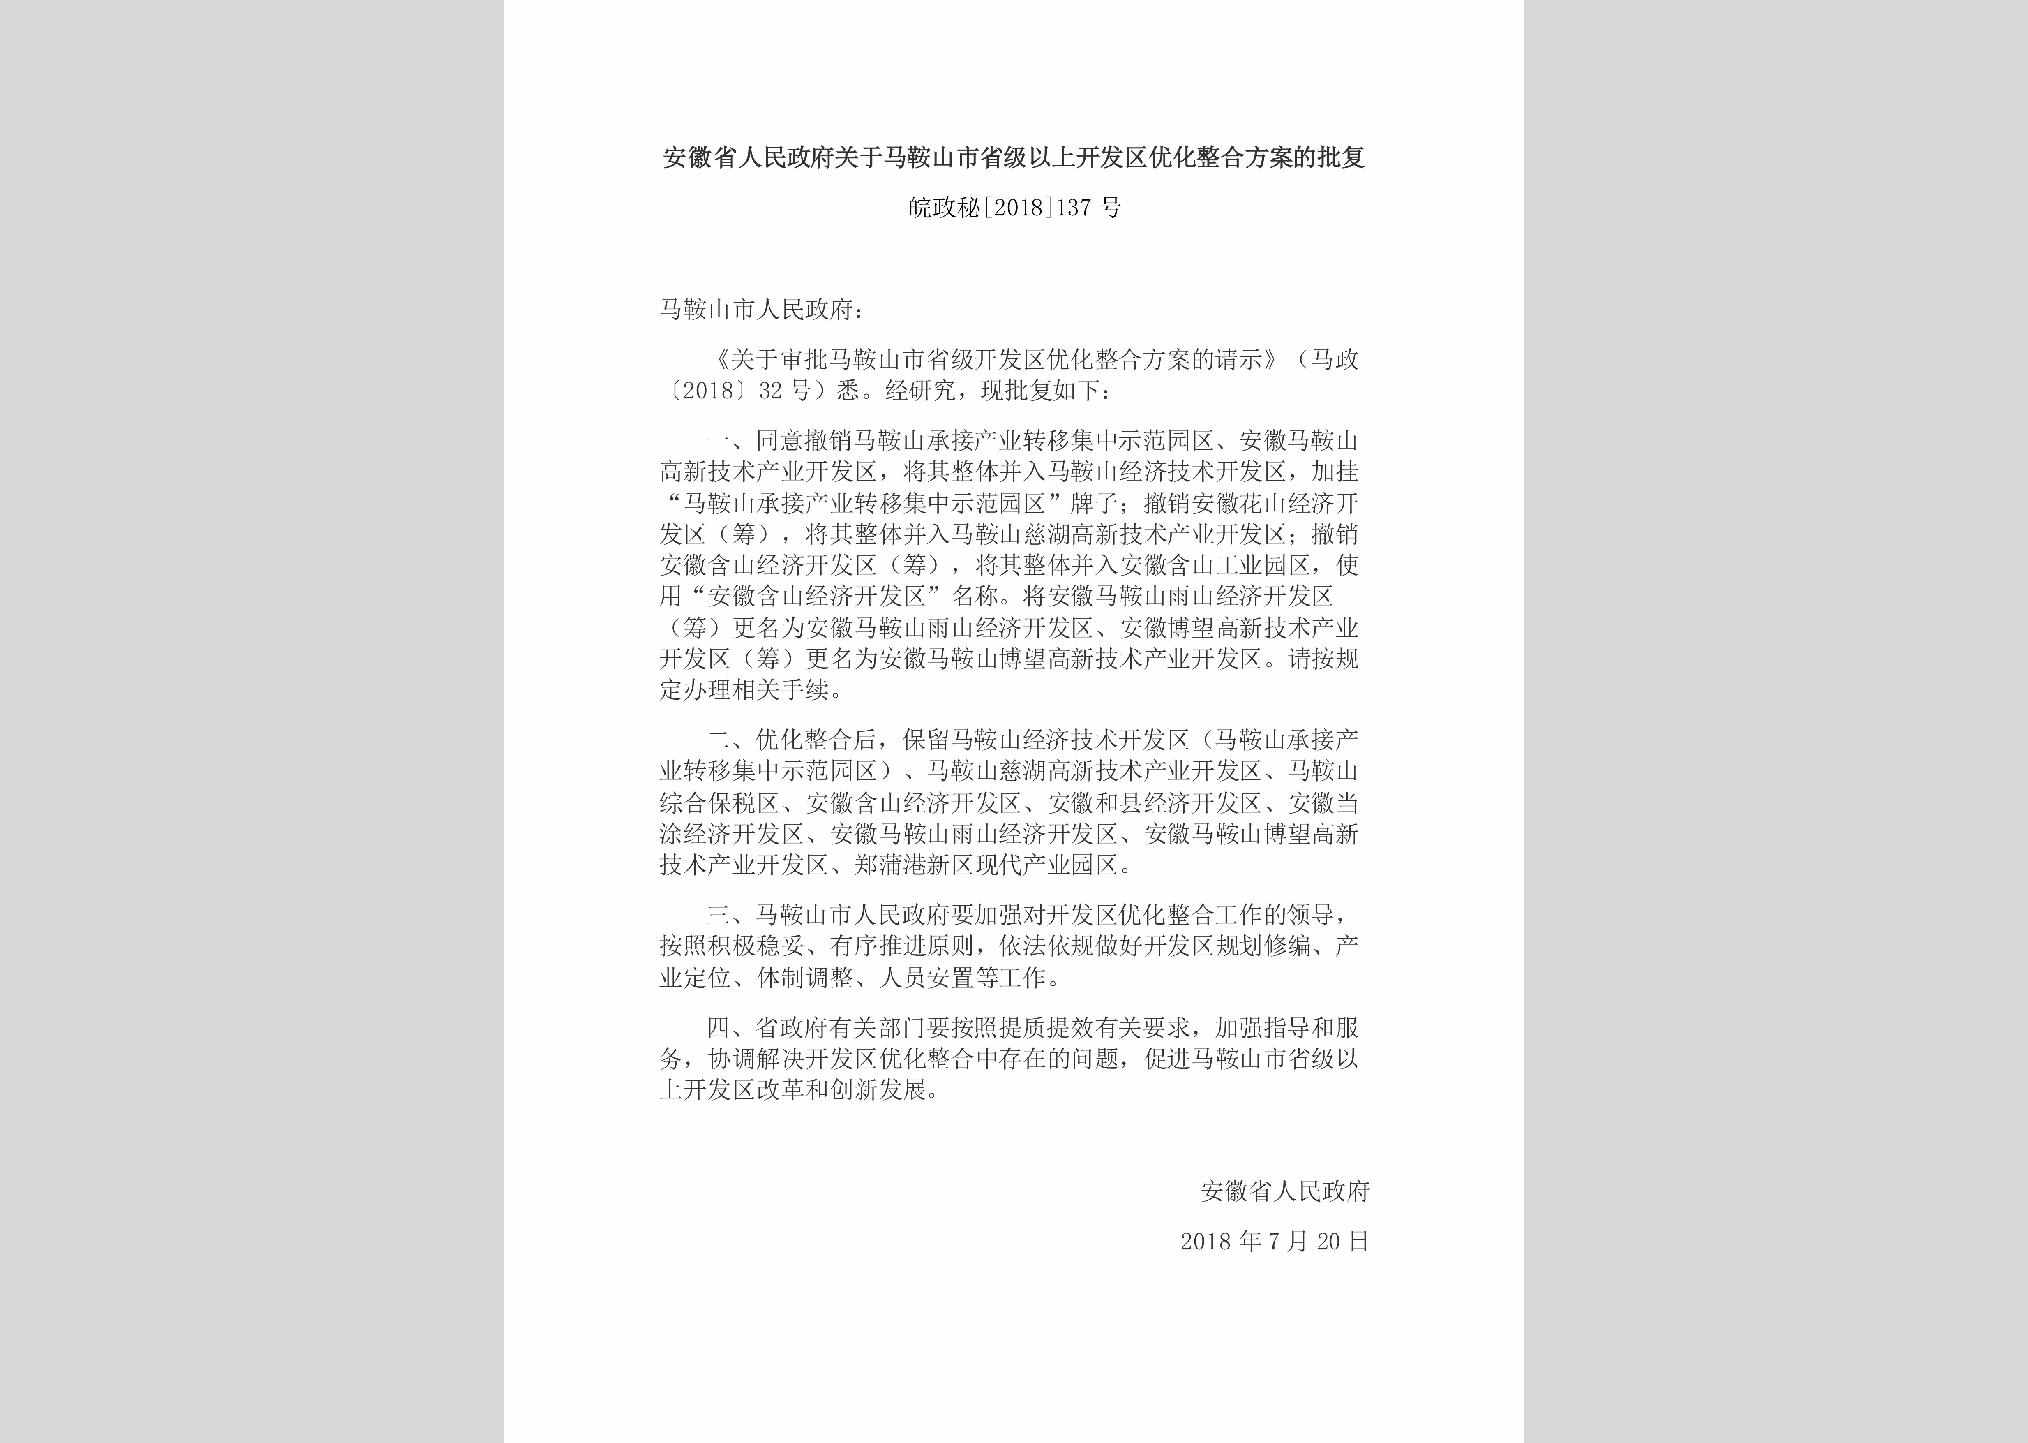 皖政秘[2018]137号：安徽省人民政府关于马鞍山市省级以上开发区优化整合方案的批复